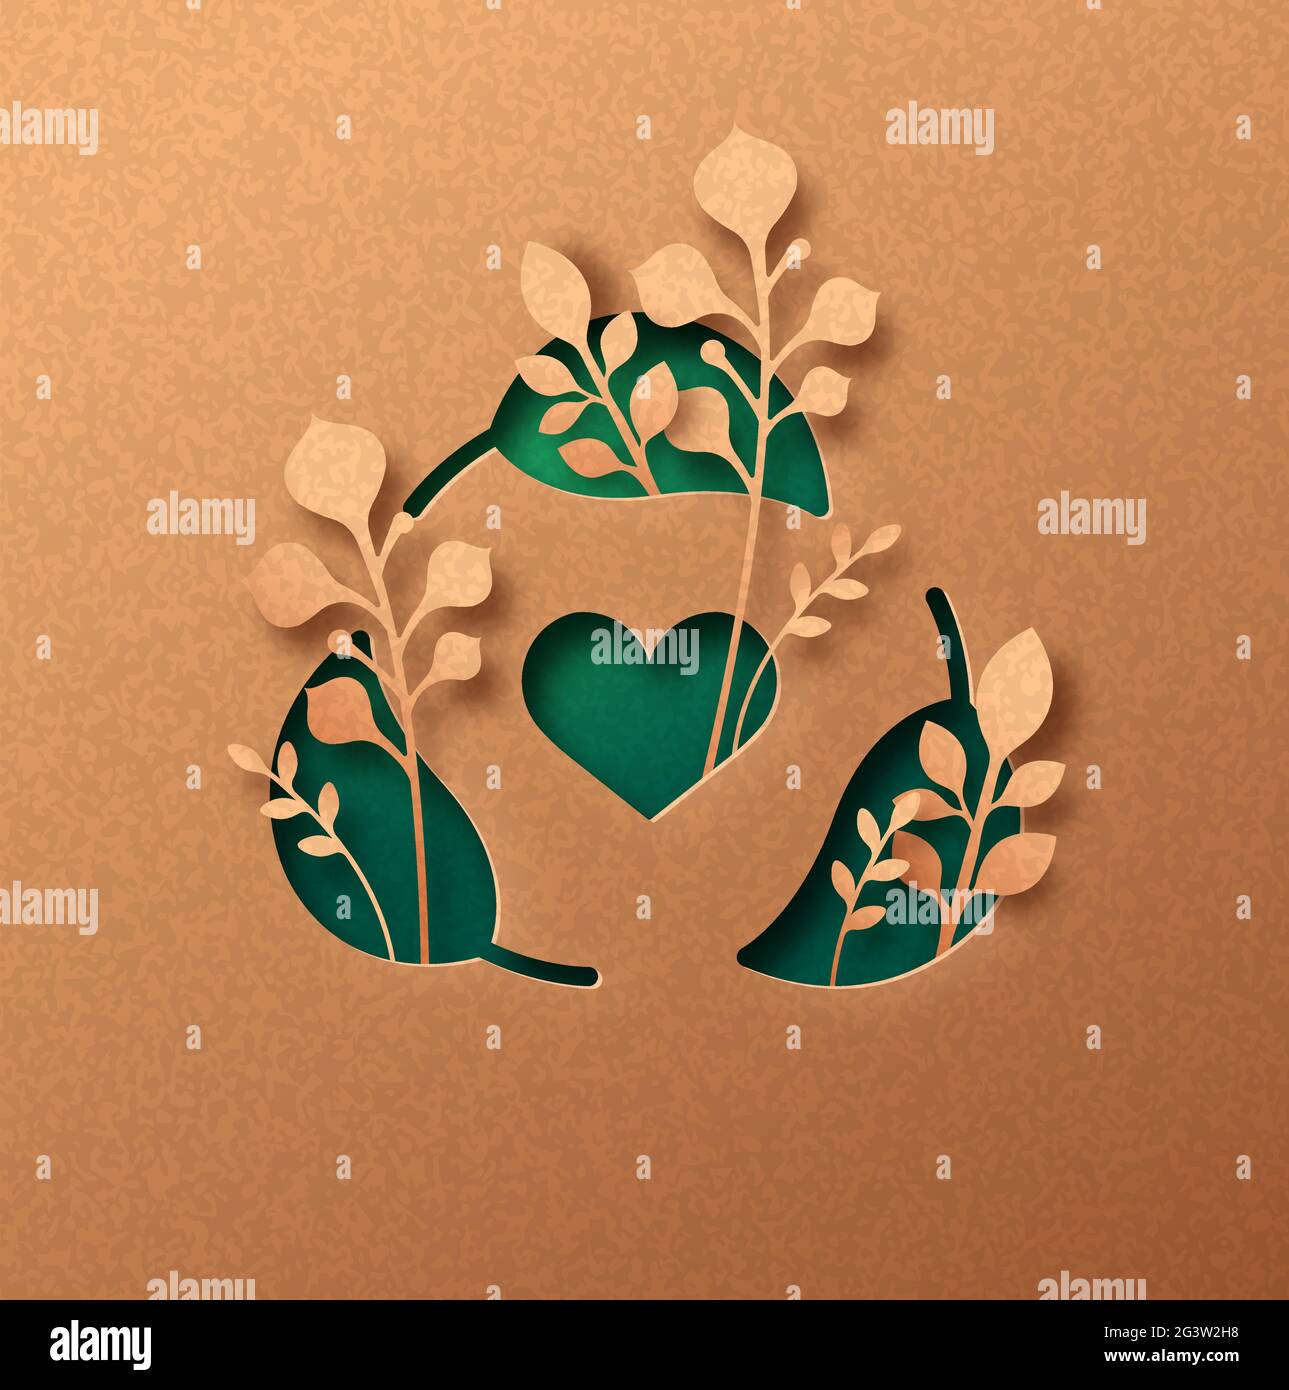 Recyceln Blatt Zeichen papercut Illustration Konzept mit grünen Pflanzenblätter wächst im Inneren. 3D Recycling Liebe Ausschnitt Handwerk Design in recyceltem Papier backgr Stock Vektor